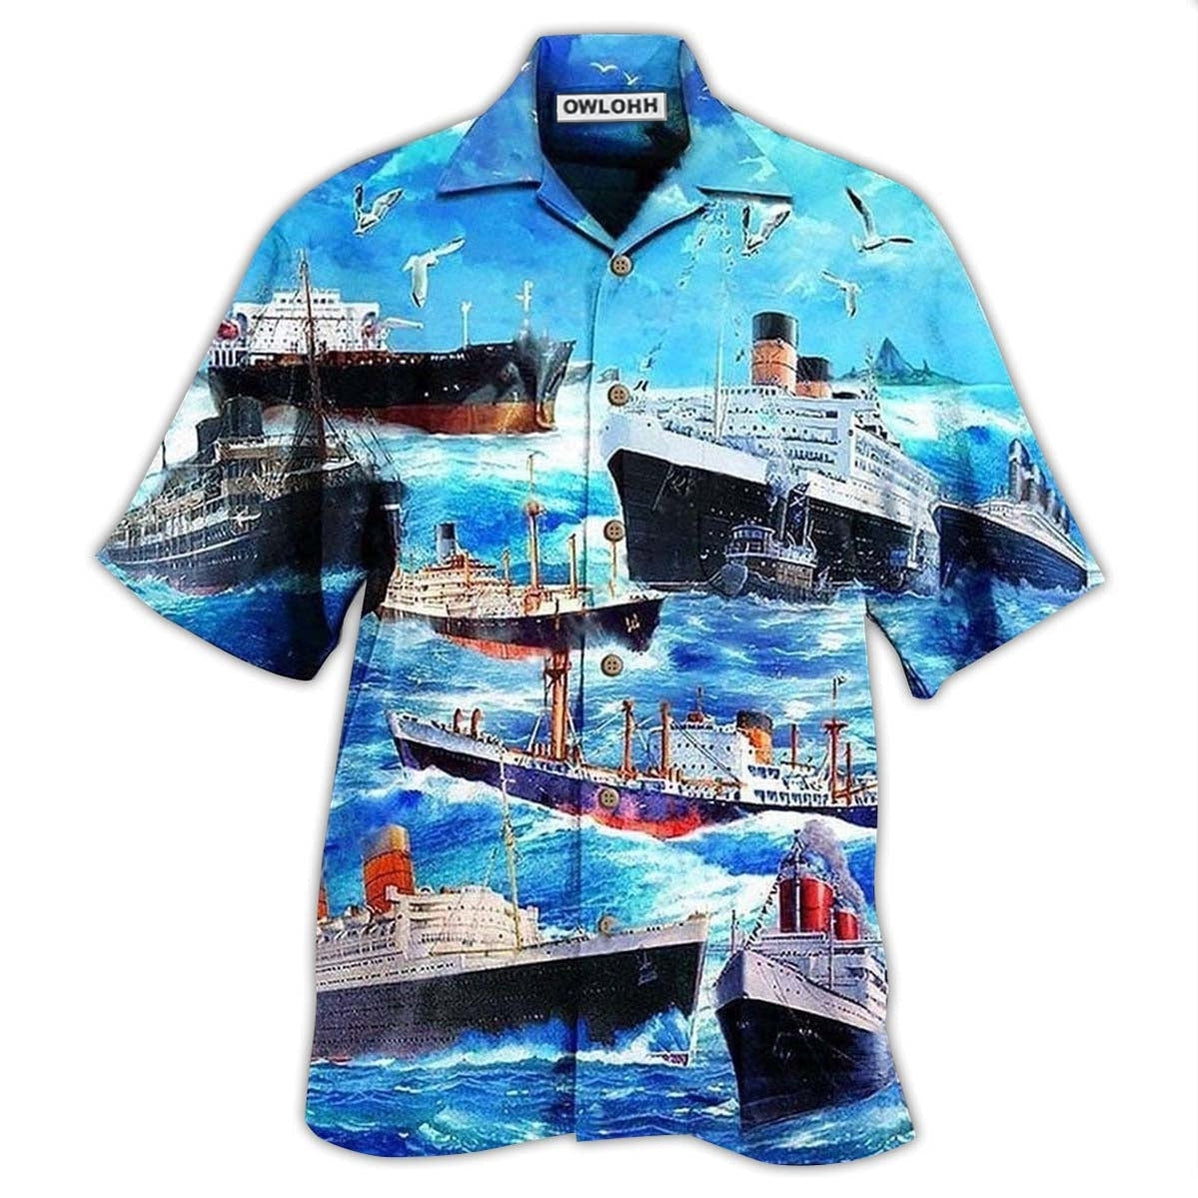 Hawaiian Shirt / Adults / S Ship Love Ocean And Sky - Hawaiian Shirt - Owls Matrix LTD